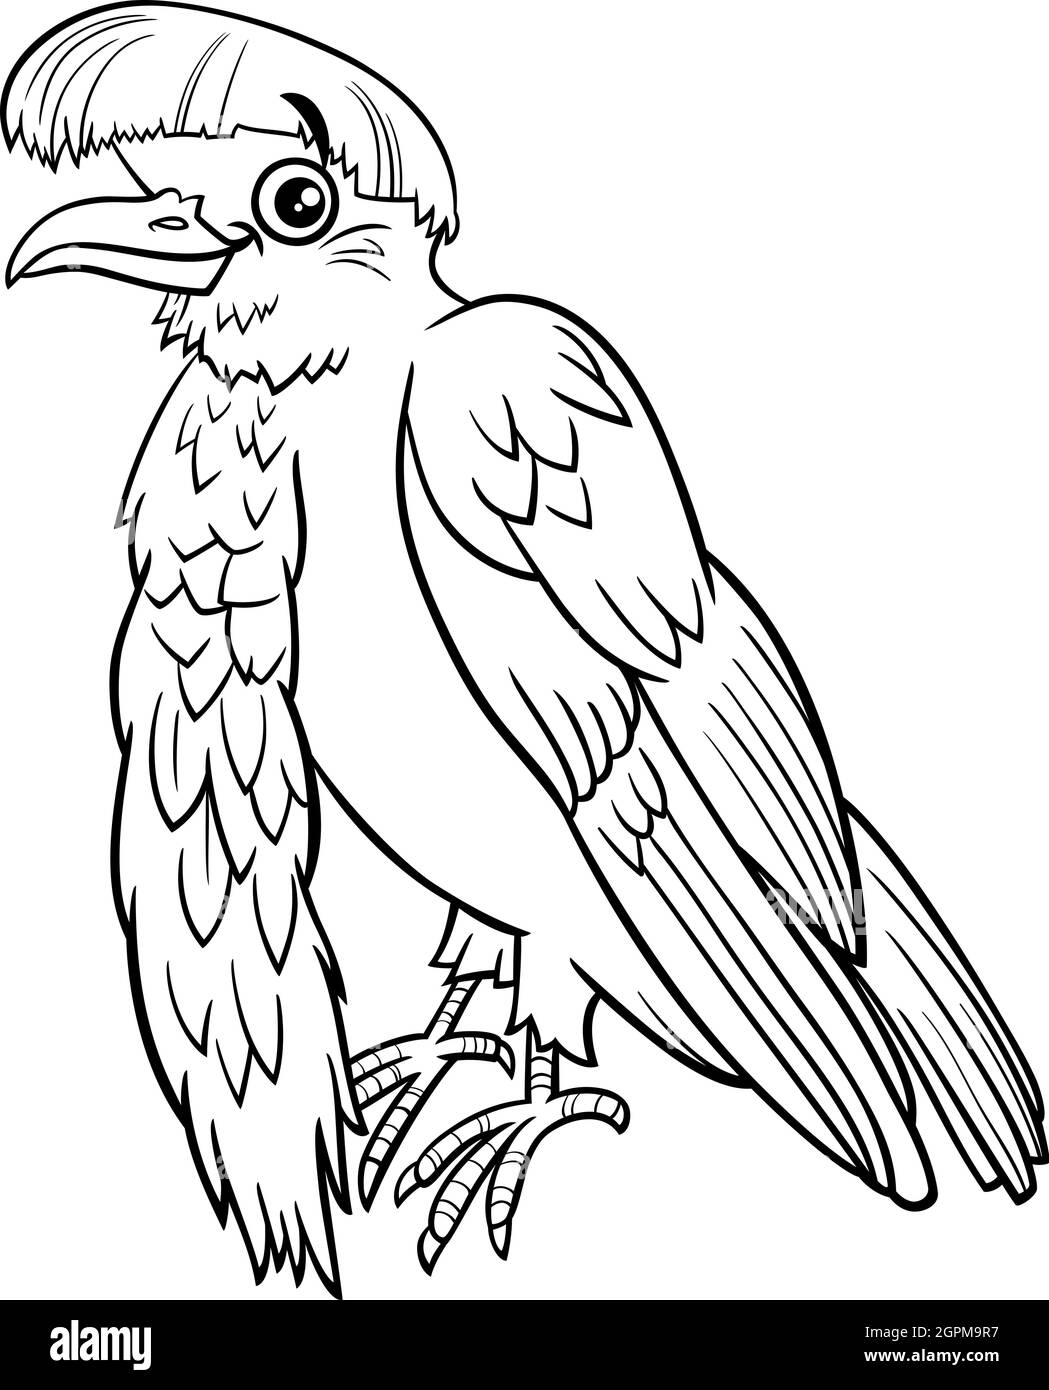 cartoon umbrellabird animal character coloring book page Stock Vector Image  & Art - Alamy